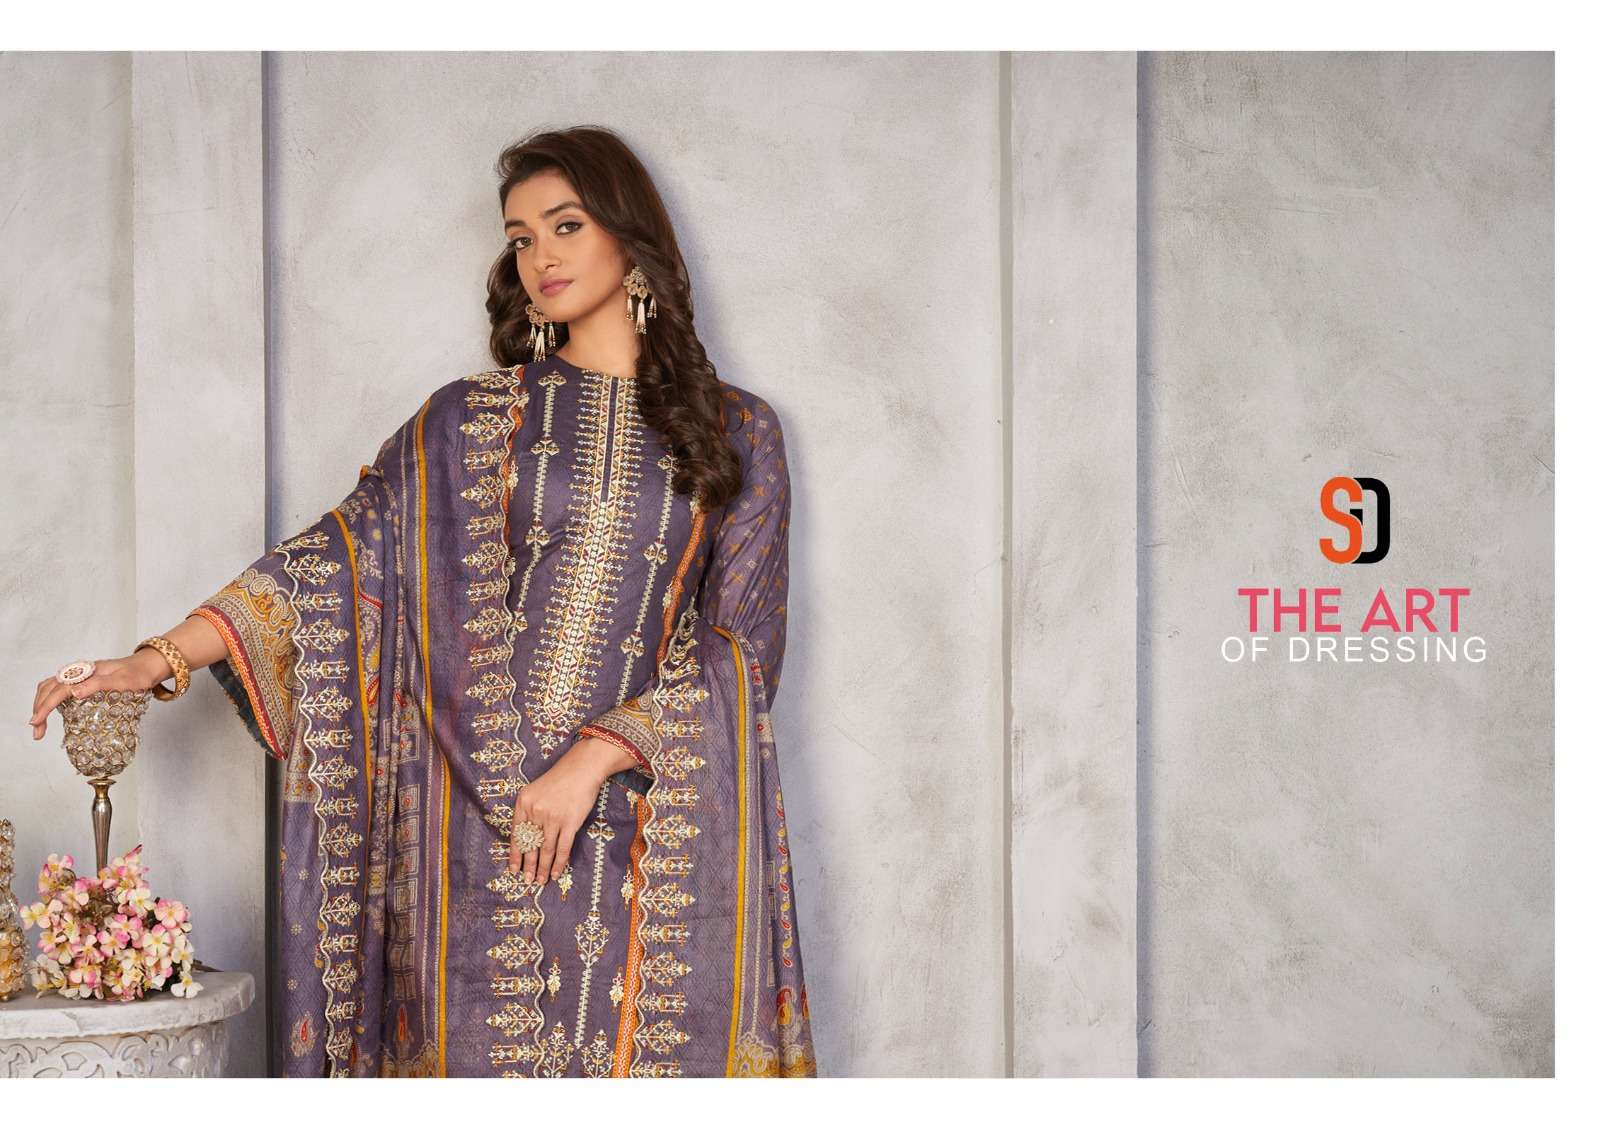 shraddha designer bin saeed vol-3 30001-30004 series fancy designer pakistani salwar suits wholesale price surat